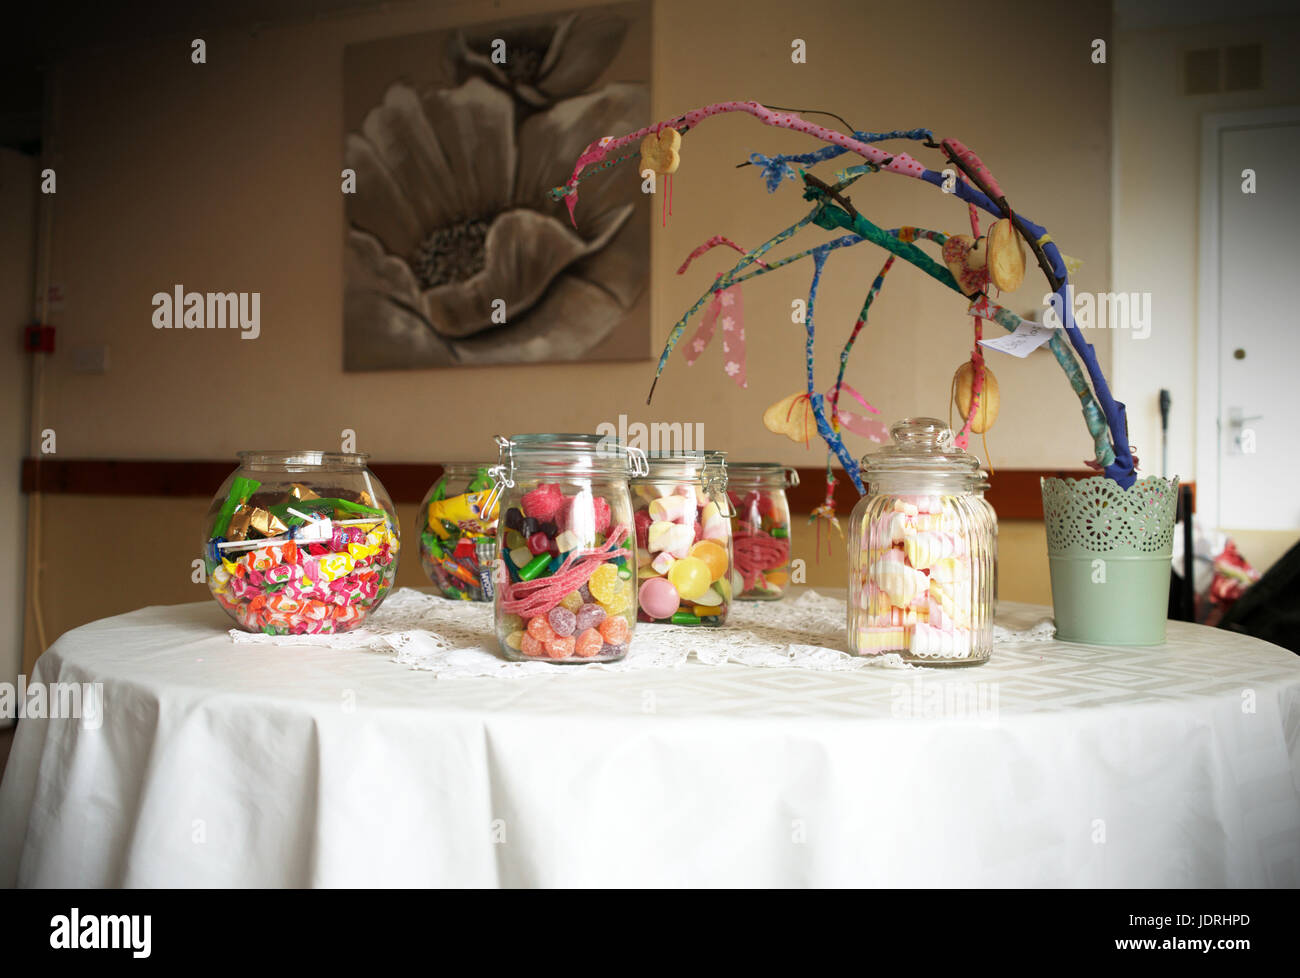 Vasi di vetro riempito con i dolci su una tabella con un panno bianco Foto Stock